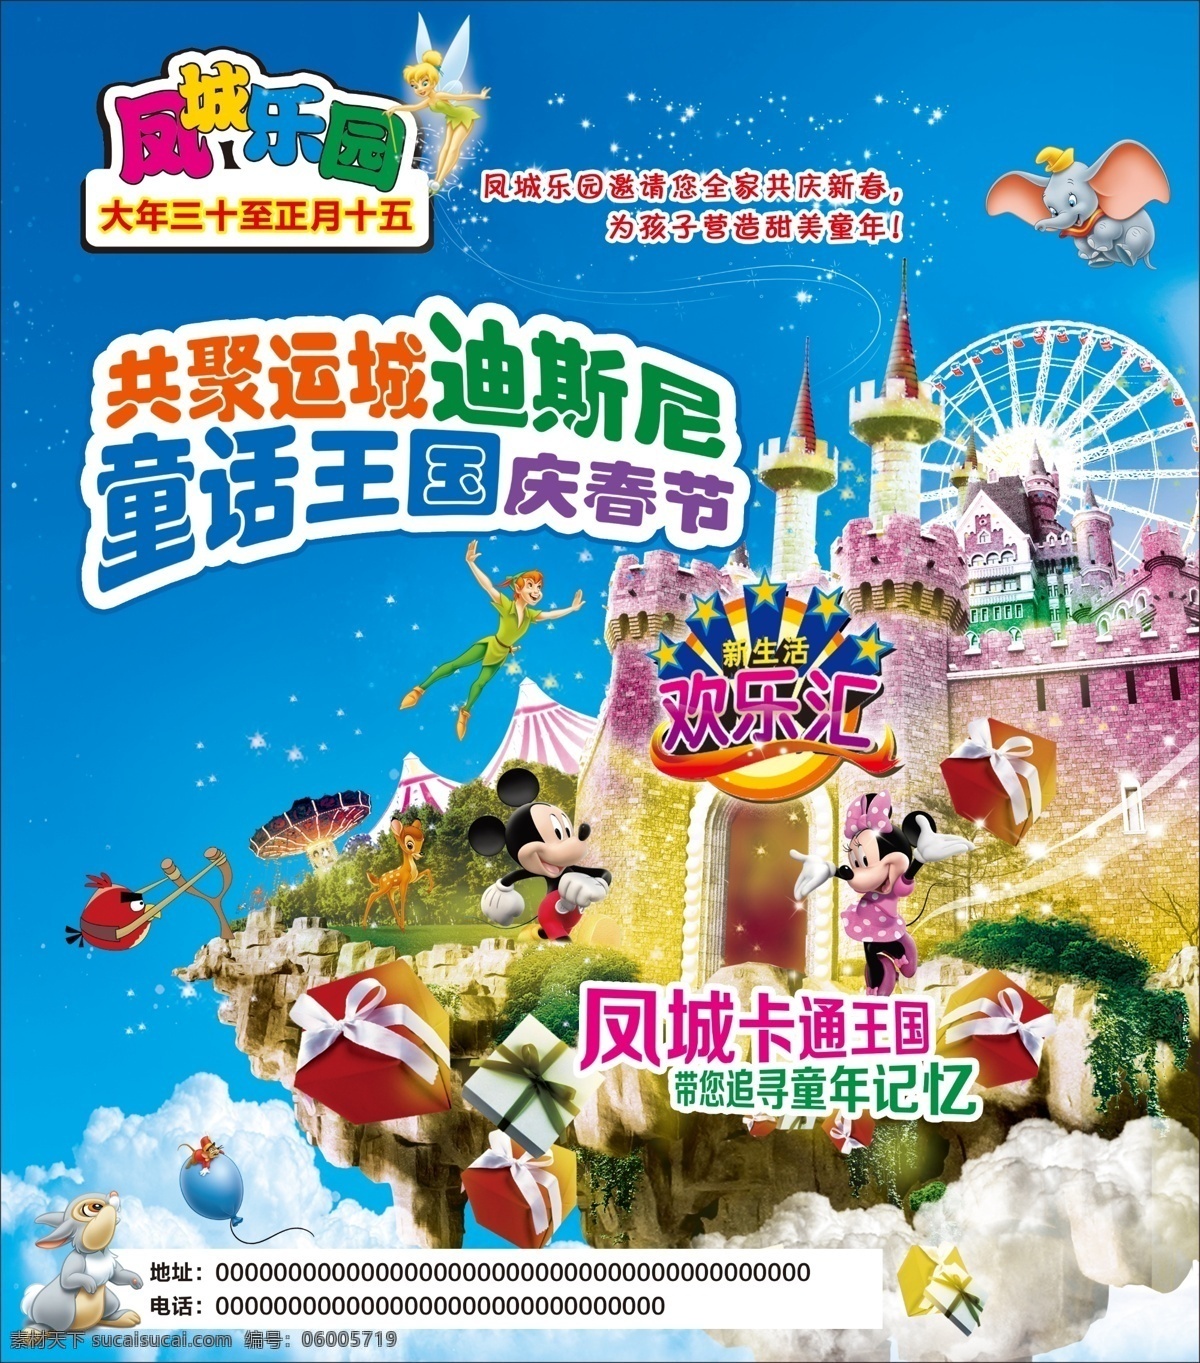 游乐园 游乐园广告 迪士尼 迪斯尼 童话王国 会飞的小象 大象 愤怒的小鸟 米奇 米妮 城堡 摩天轮 人 兔子 礼物 广告设计模板 源文件